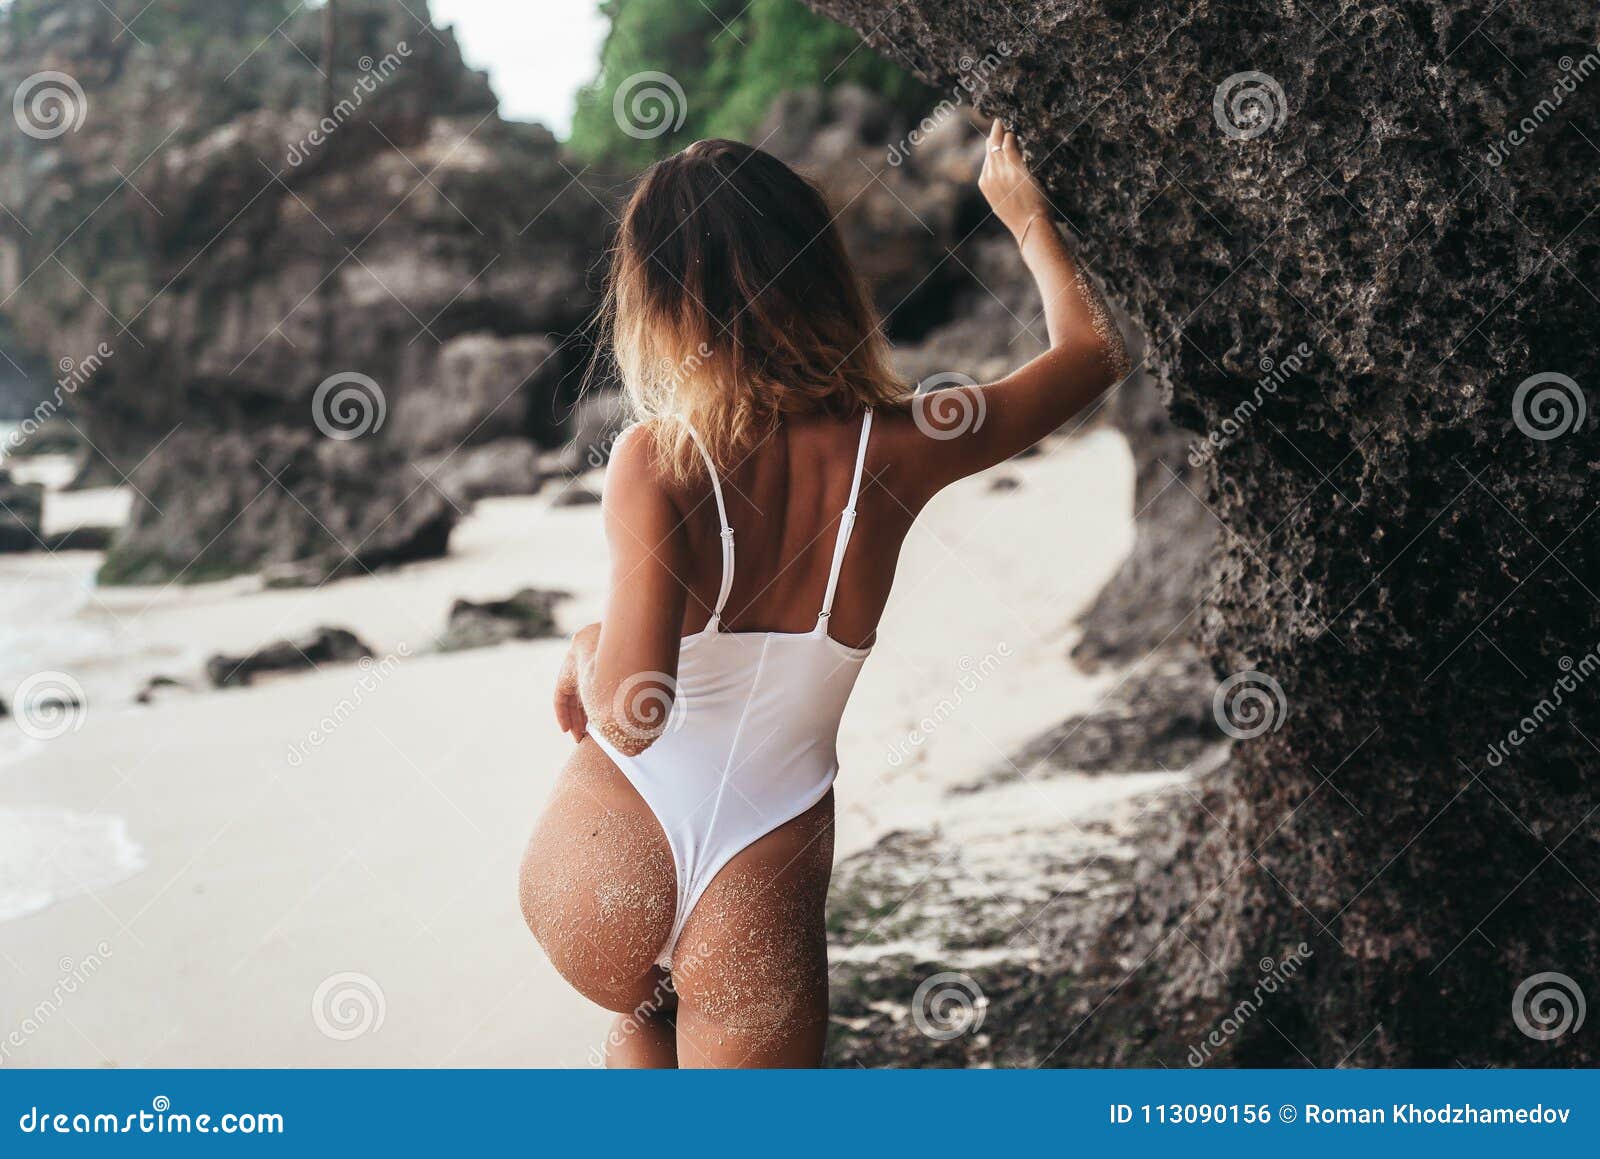 Nice Ass On Beach